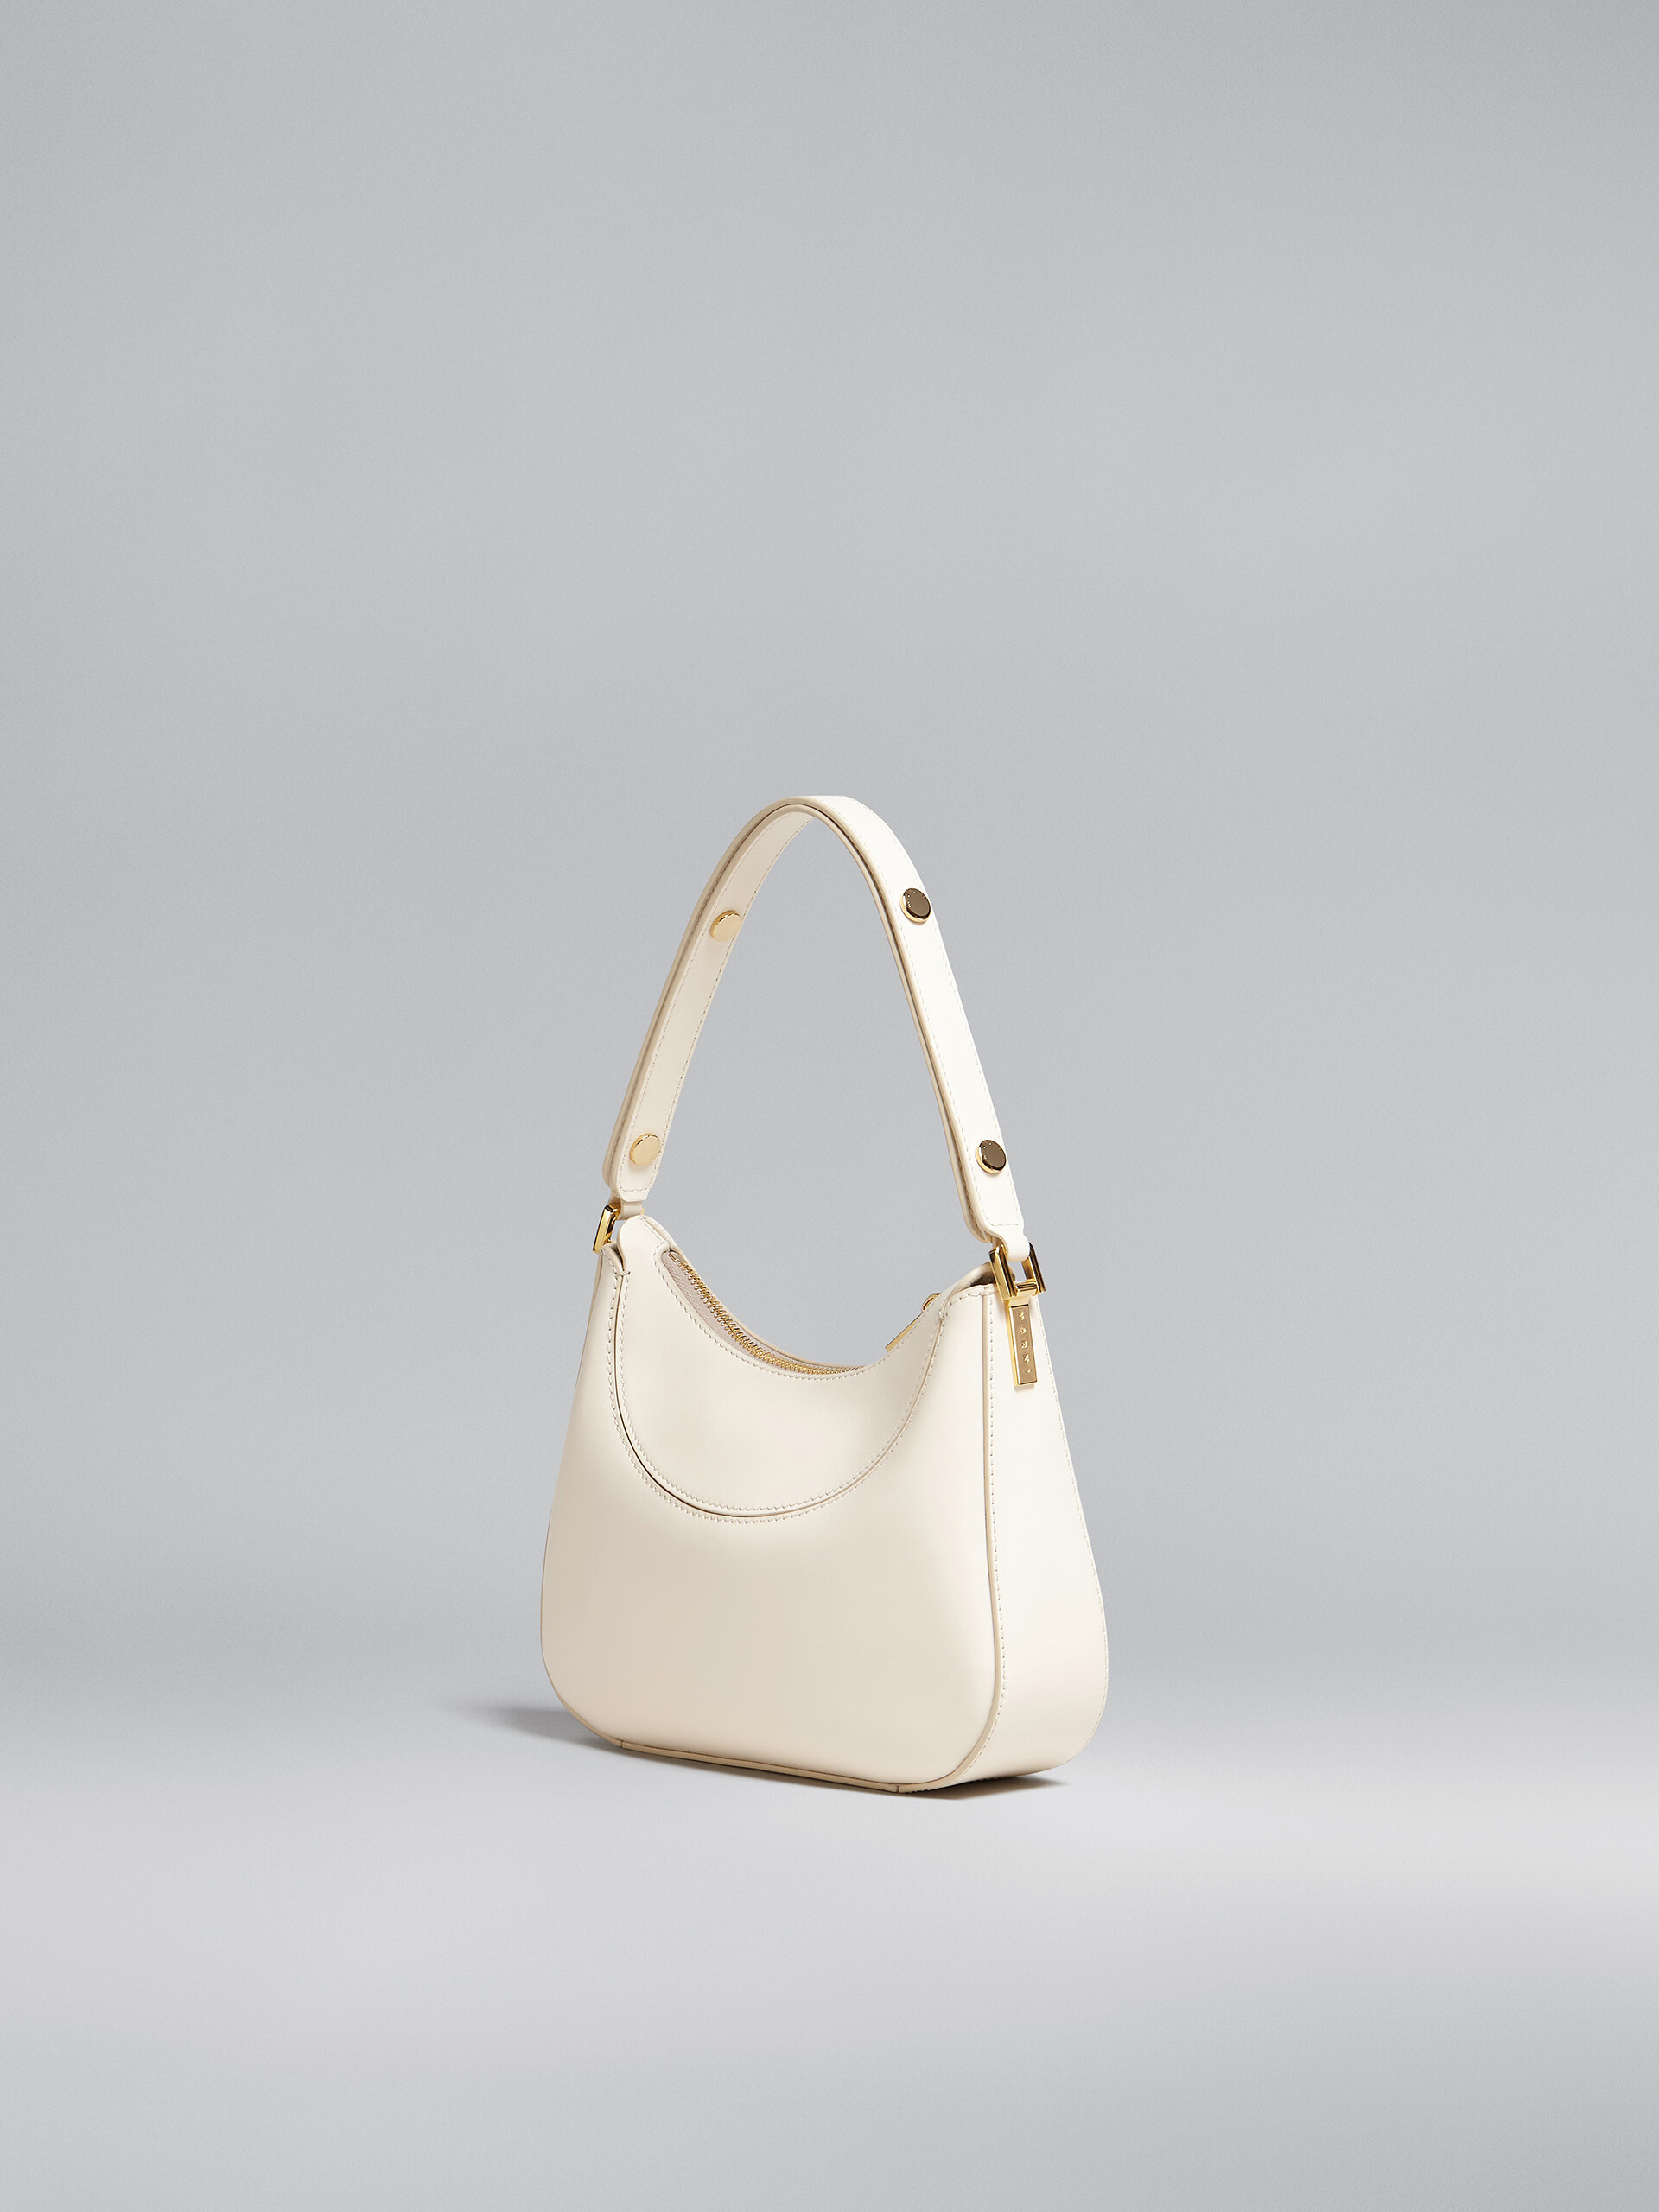 Mini-sac Milano en cuir blanc - Sacs à main - Image 3